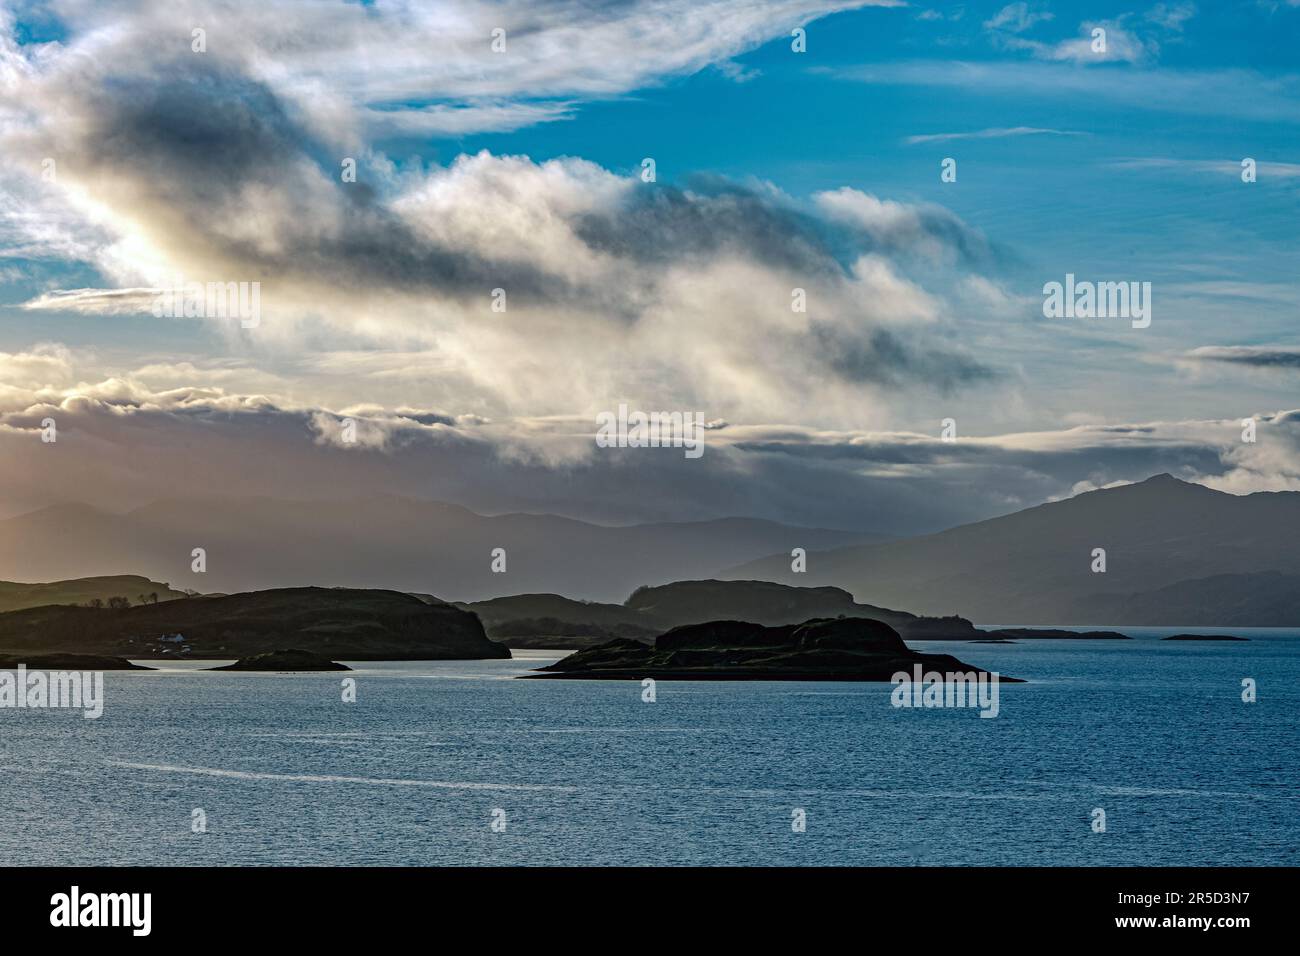 Magnifique paysage mystique paysage de lac en Écosse avec ciel nuageux et rayons de soleil nature nuages aventure à couper le souffle clair hebrides Banque D'Images